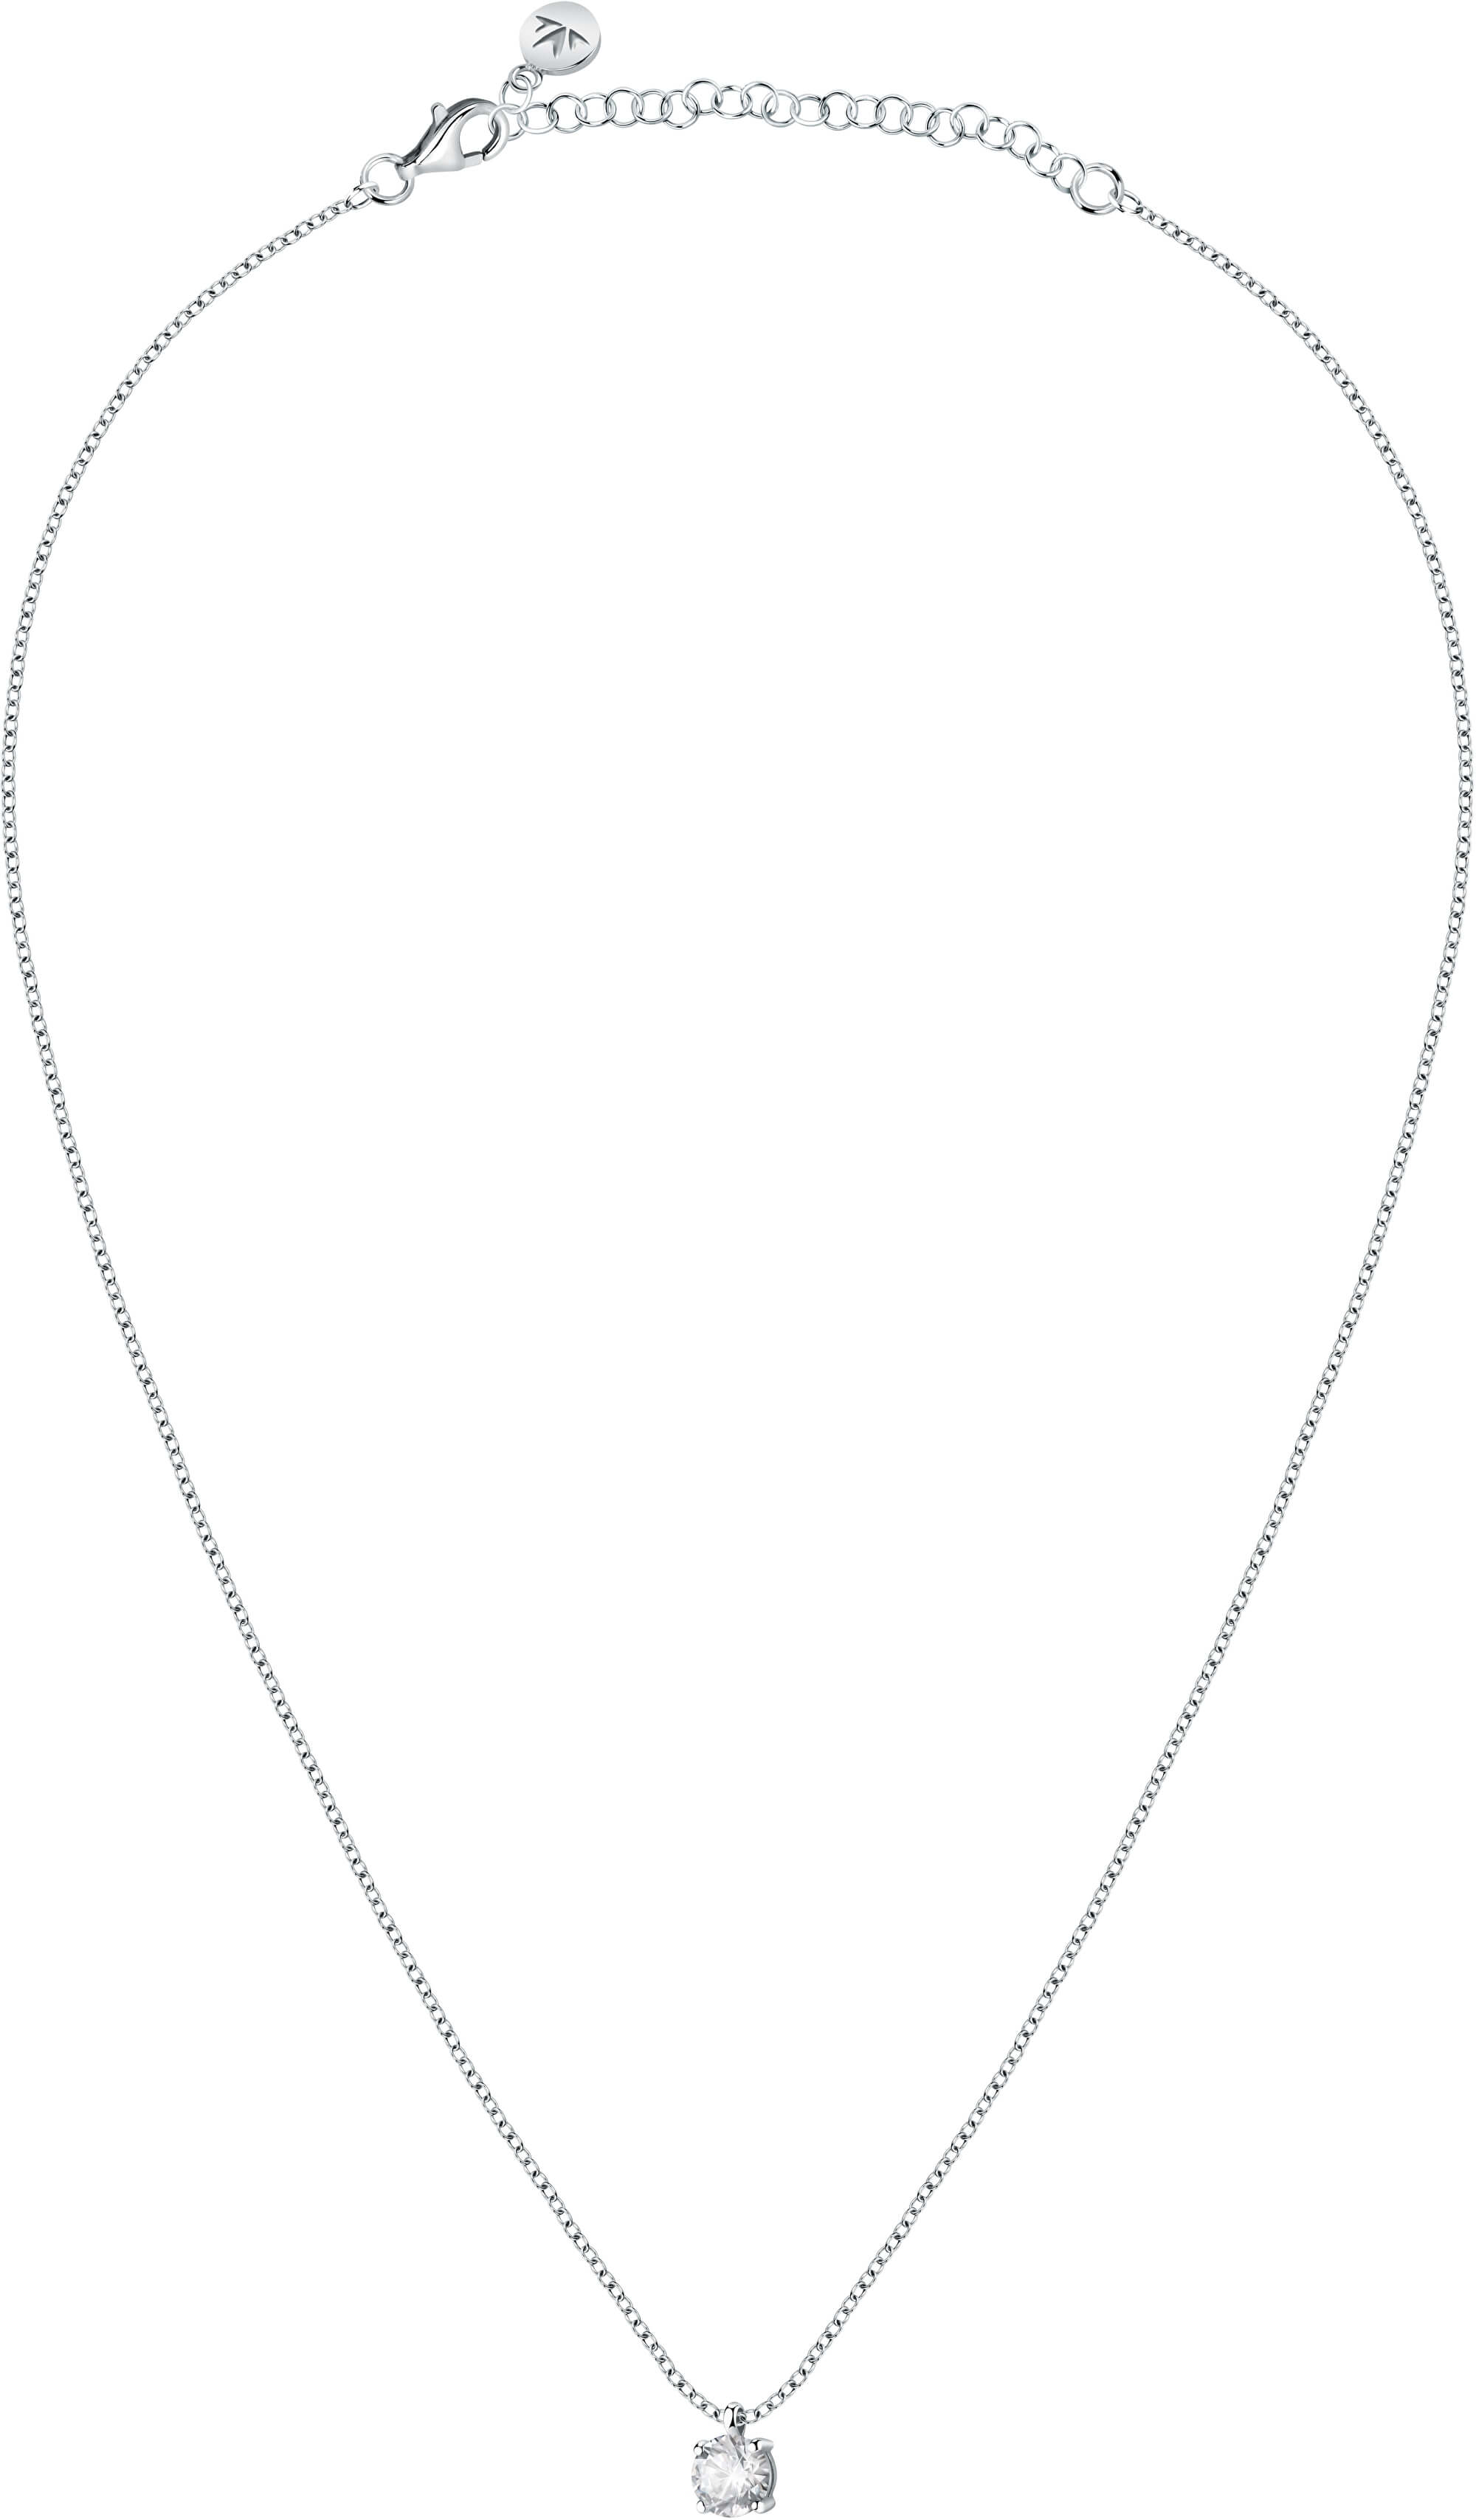 Morellato Třpytivý stříbrný náhrdelník s krystalem Tesori SAIW98 (řetízek, přívěsek)